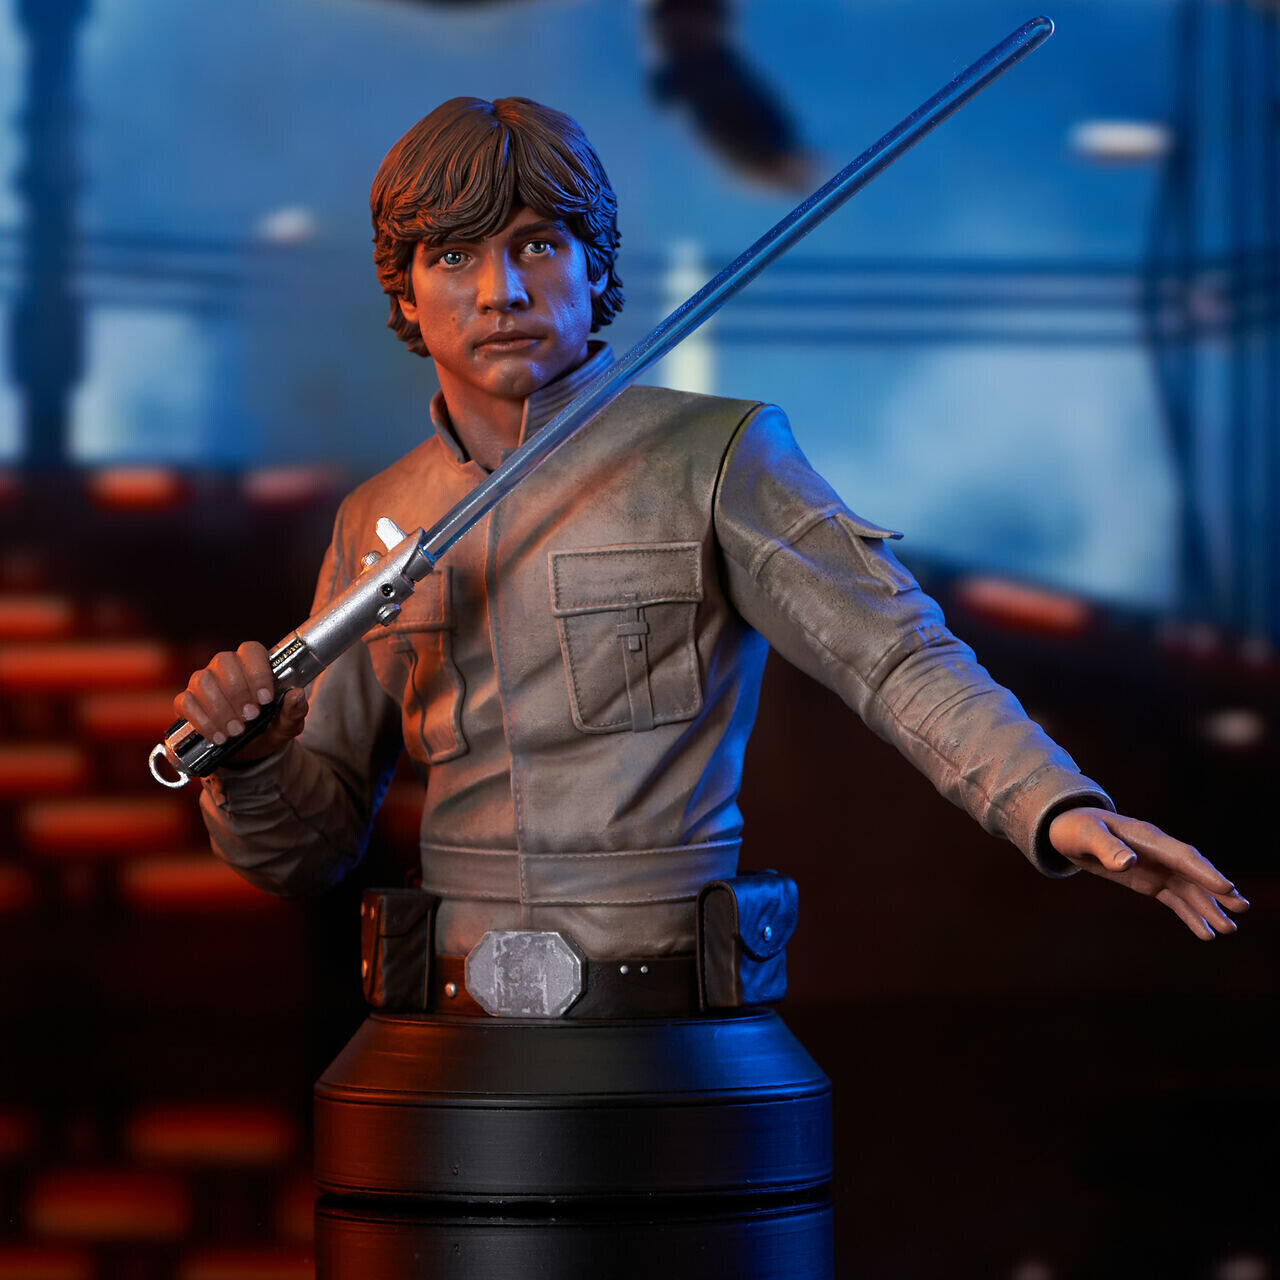 Star Wars Gentle Giant Luke Skywalker Bespin 1:6 Scale Mini-Bust